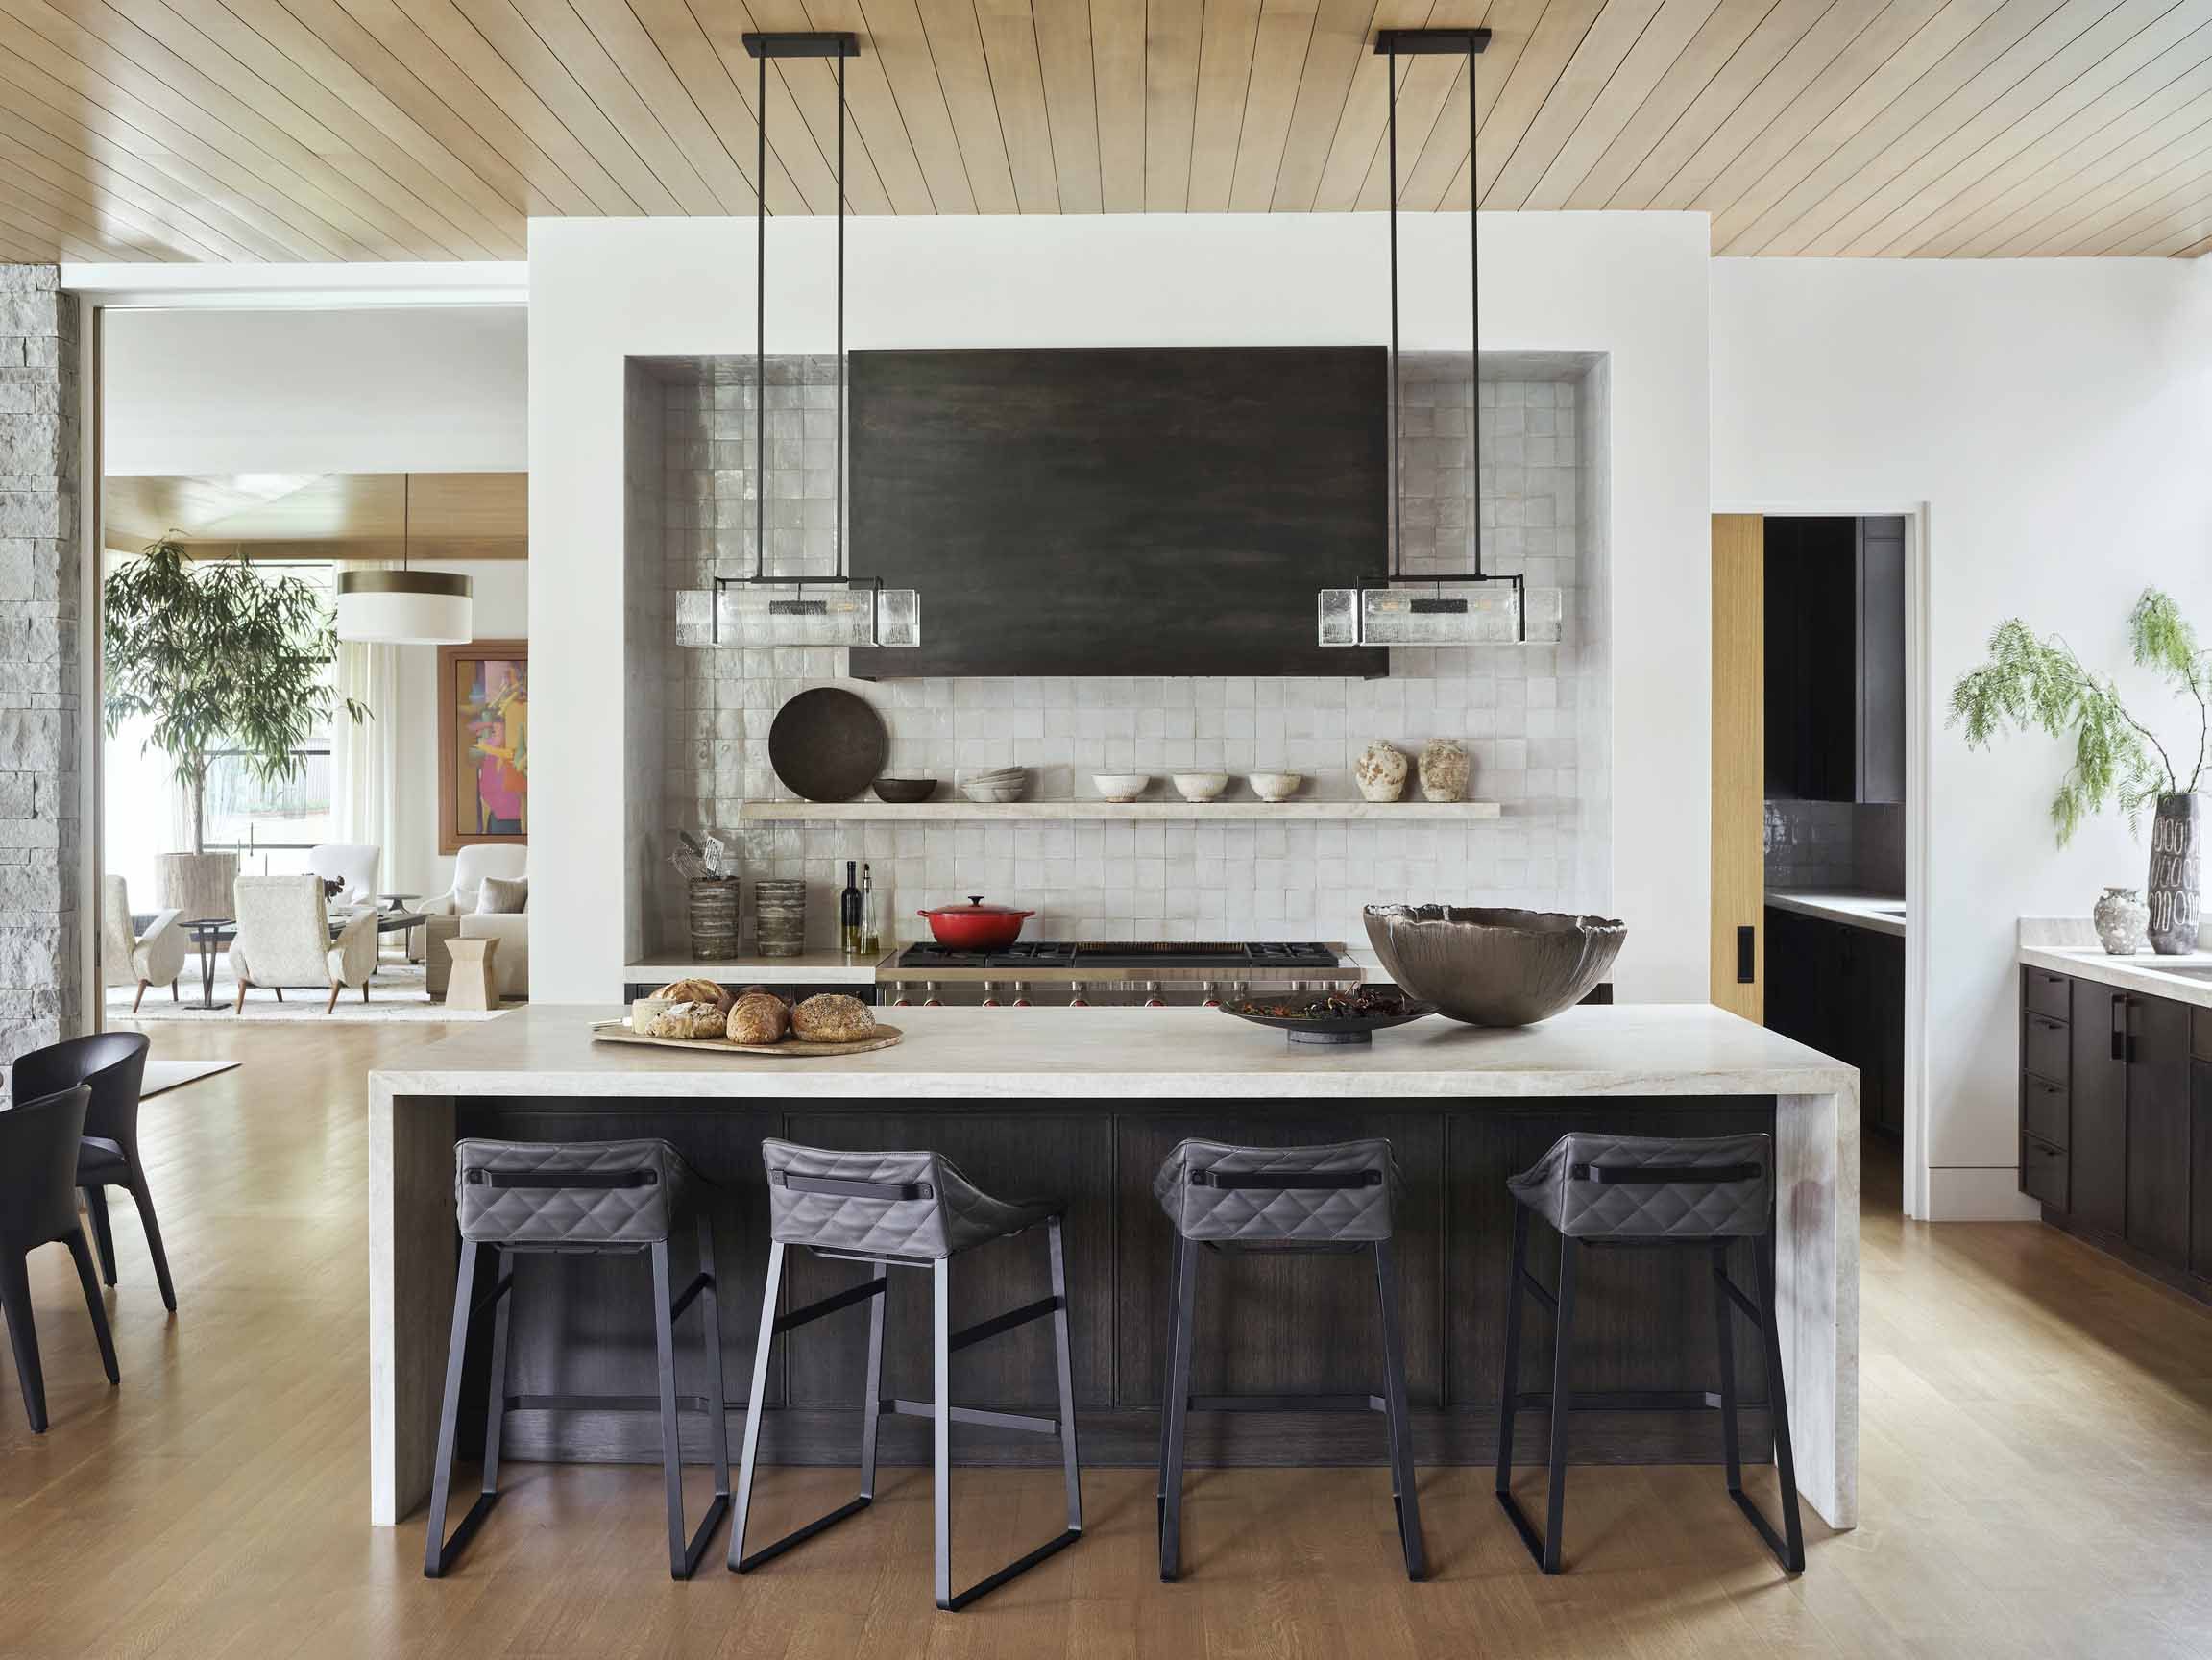 Best Kitchen Backsplash Ideas 20   Tile Designs for Kitchens